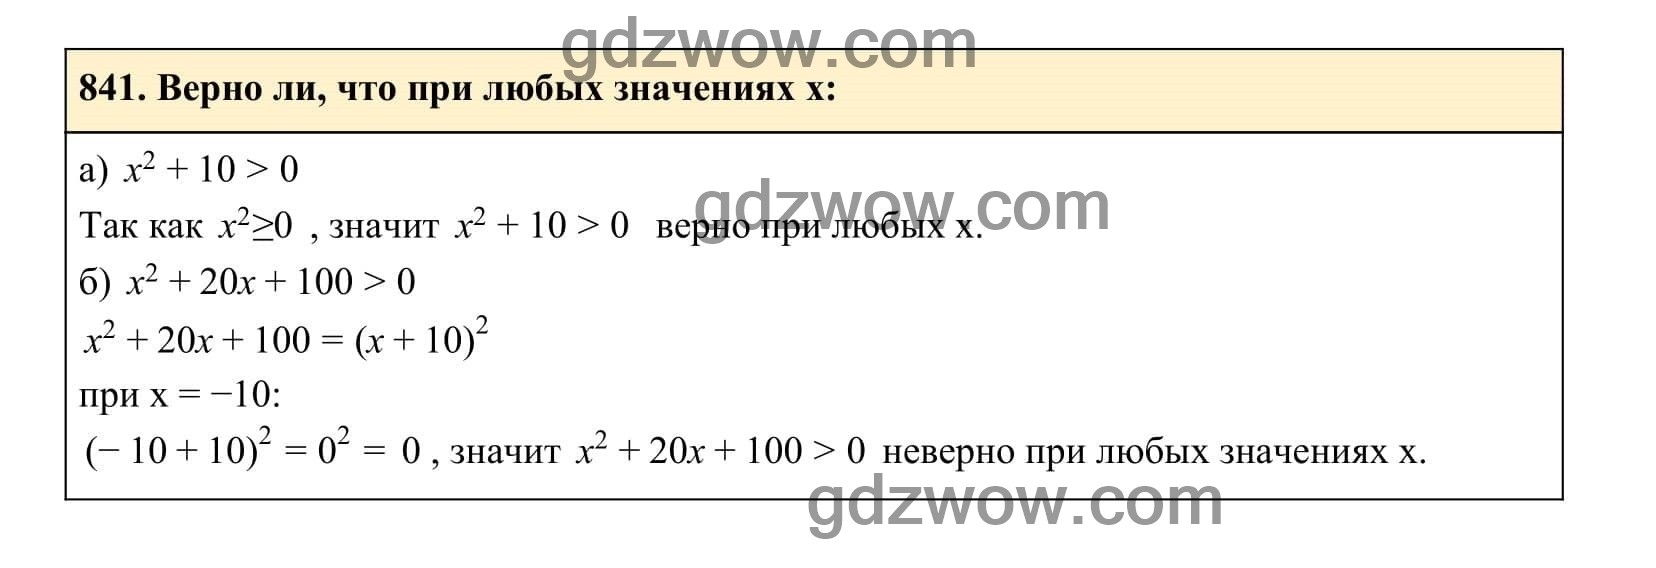 Упражнение 841 - ГДЗ по Алгебре 7 класс Учебник Макарычев (решебник) - GDZwow